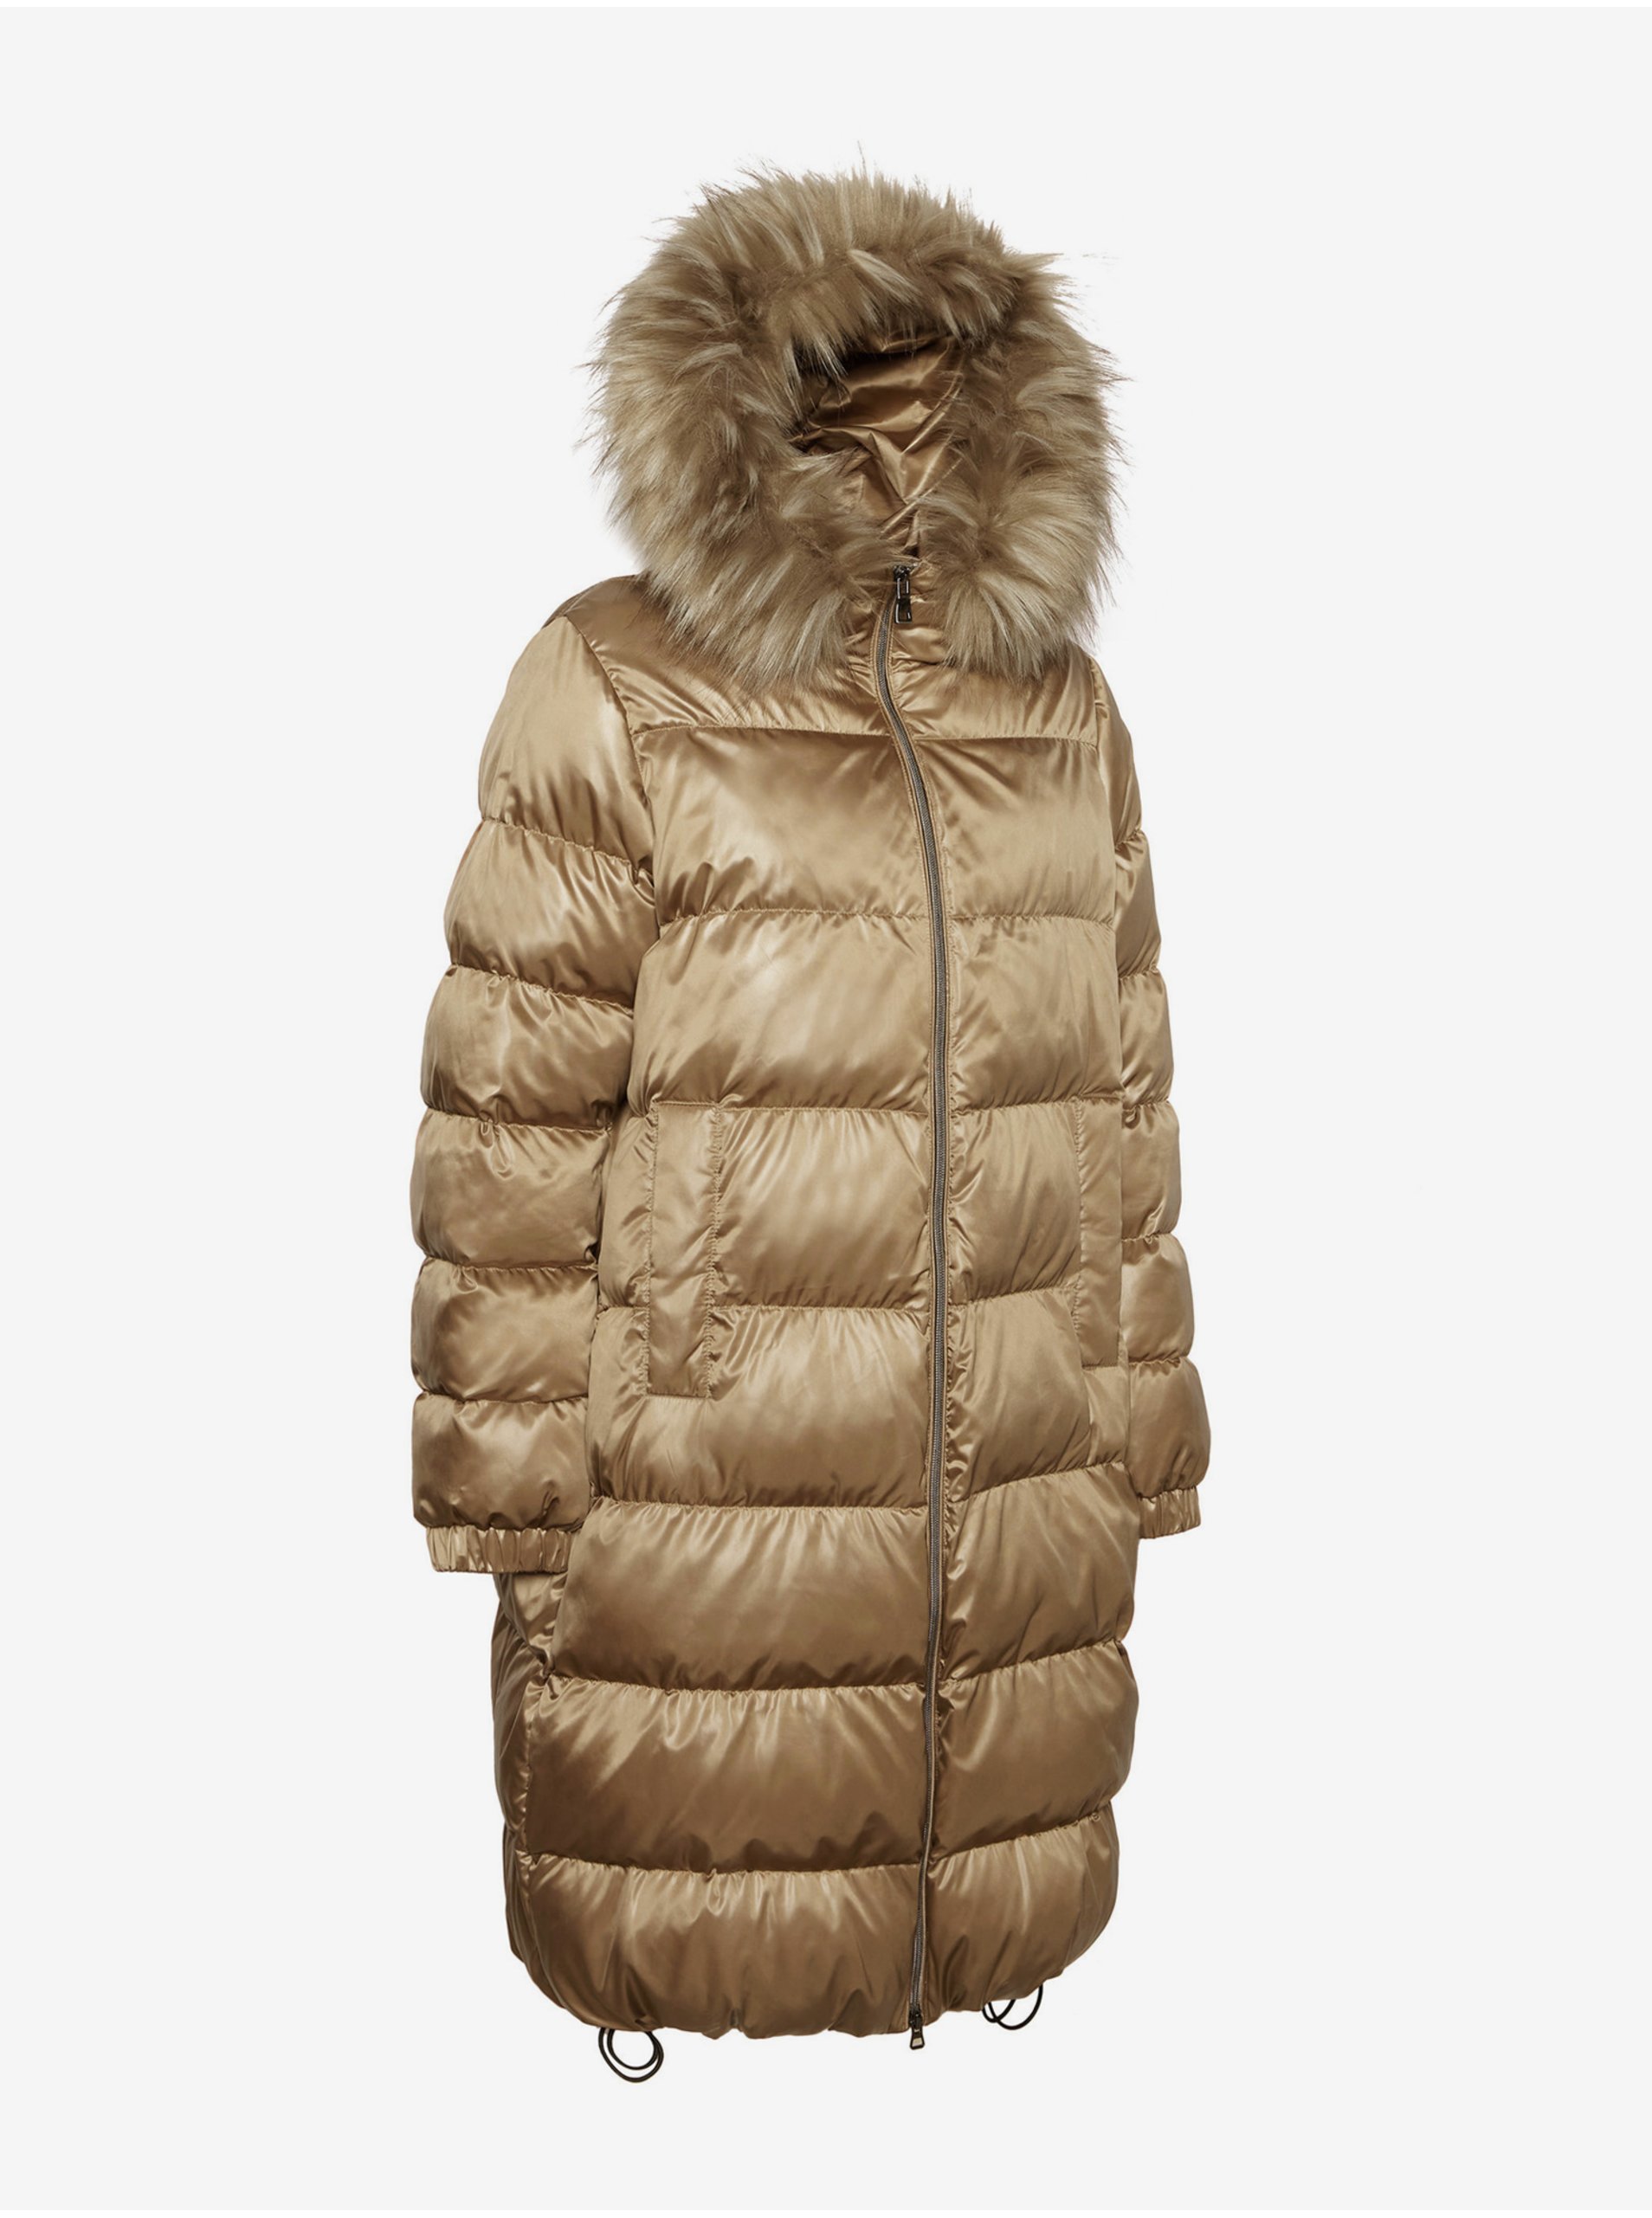 Hnědý dámský lesklý prošívaný zimní kabát s kapucí s kožíškem Geox Becksie